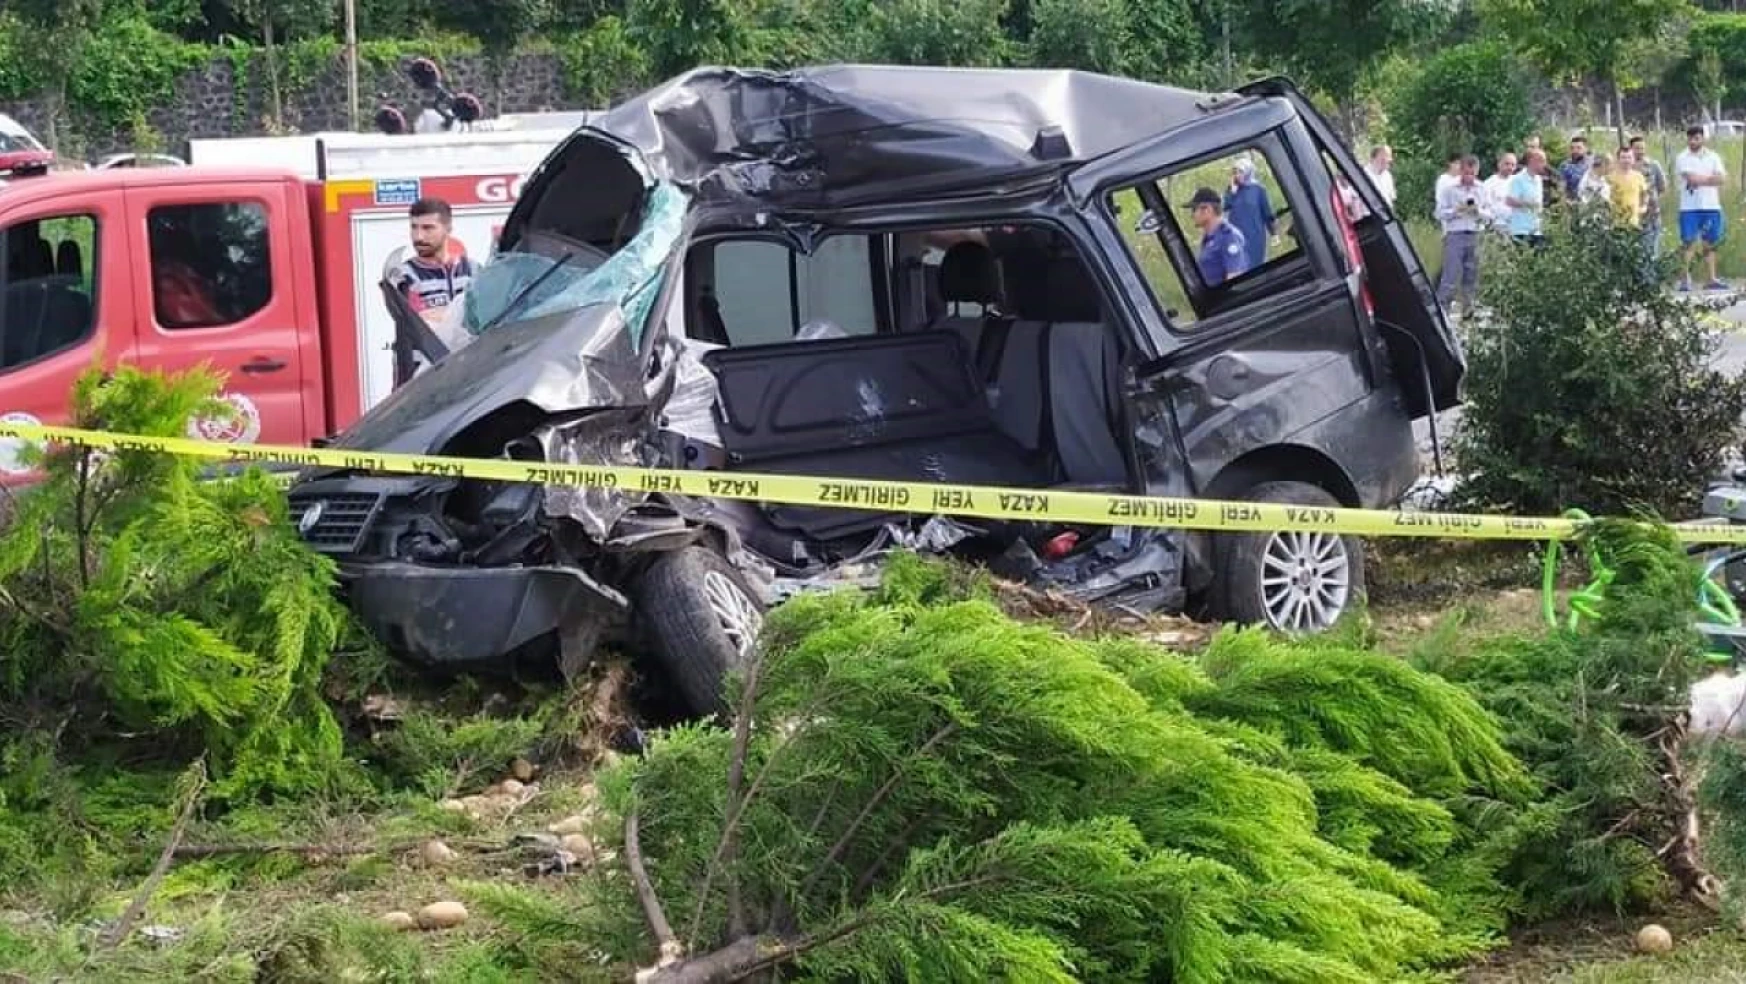 Kırmızı ışık ihlali yapan tır sürücüsü kazaya neden oldu: 2 ölü